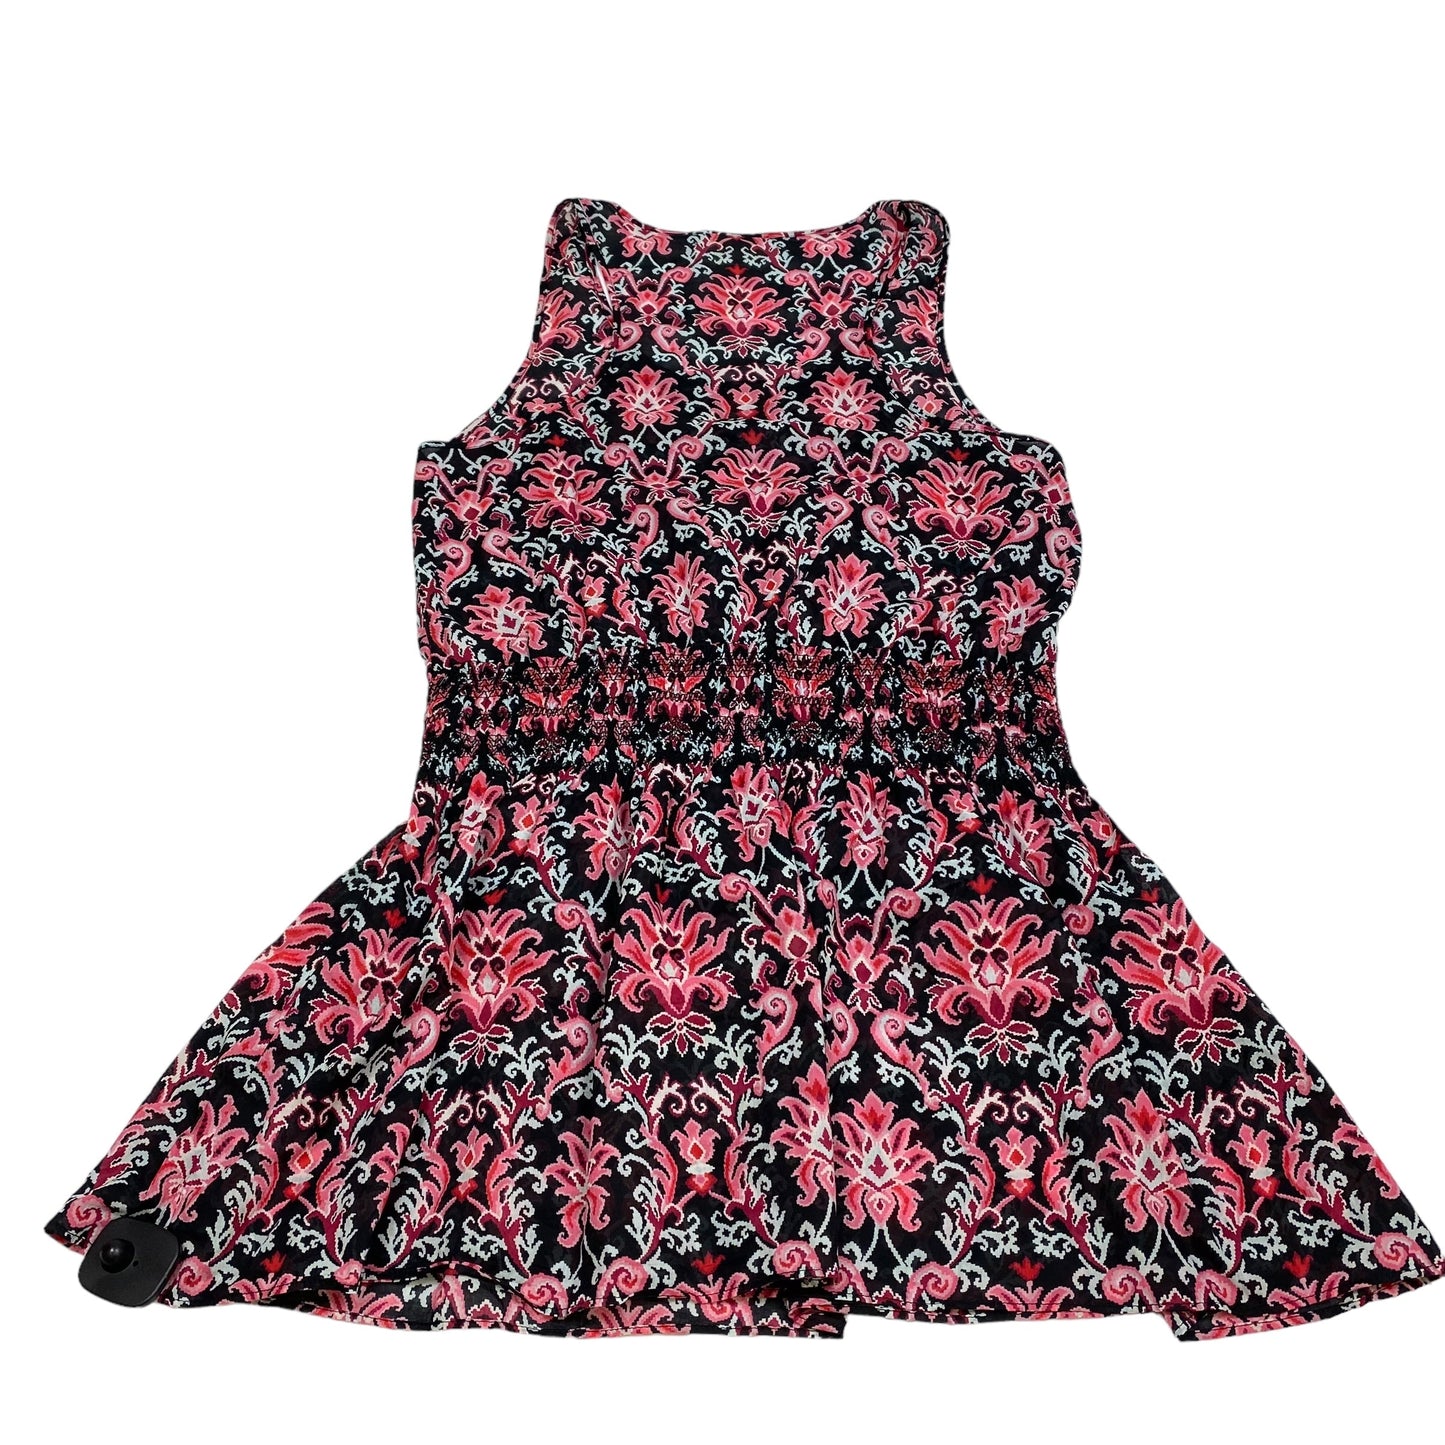 Black & Pink Dress Designer Kate Spade, Size L